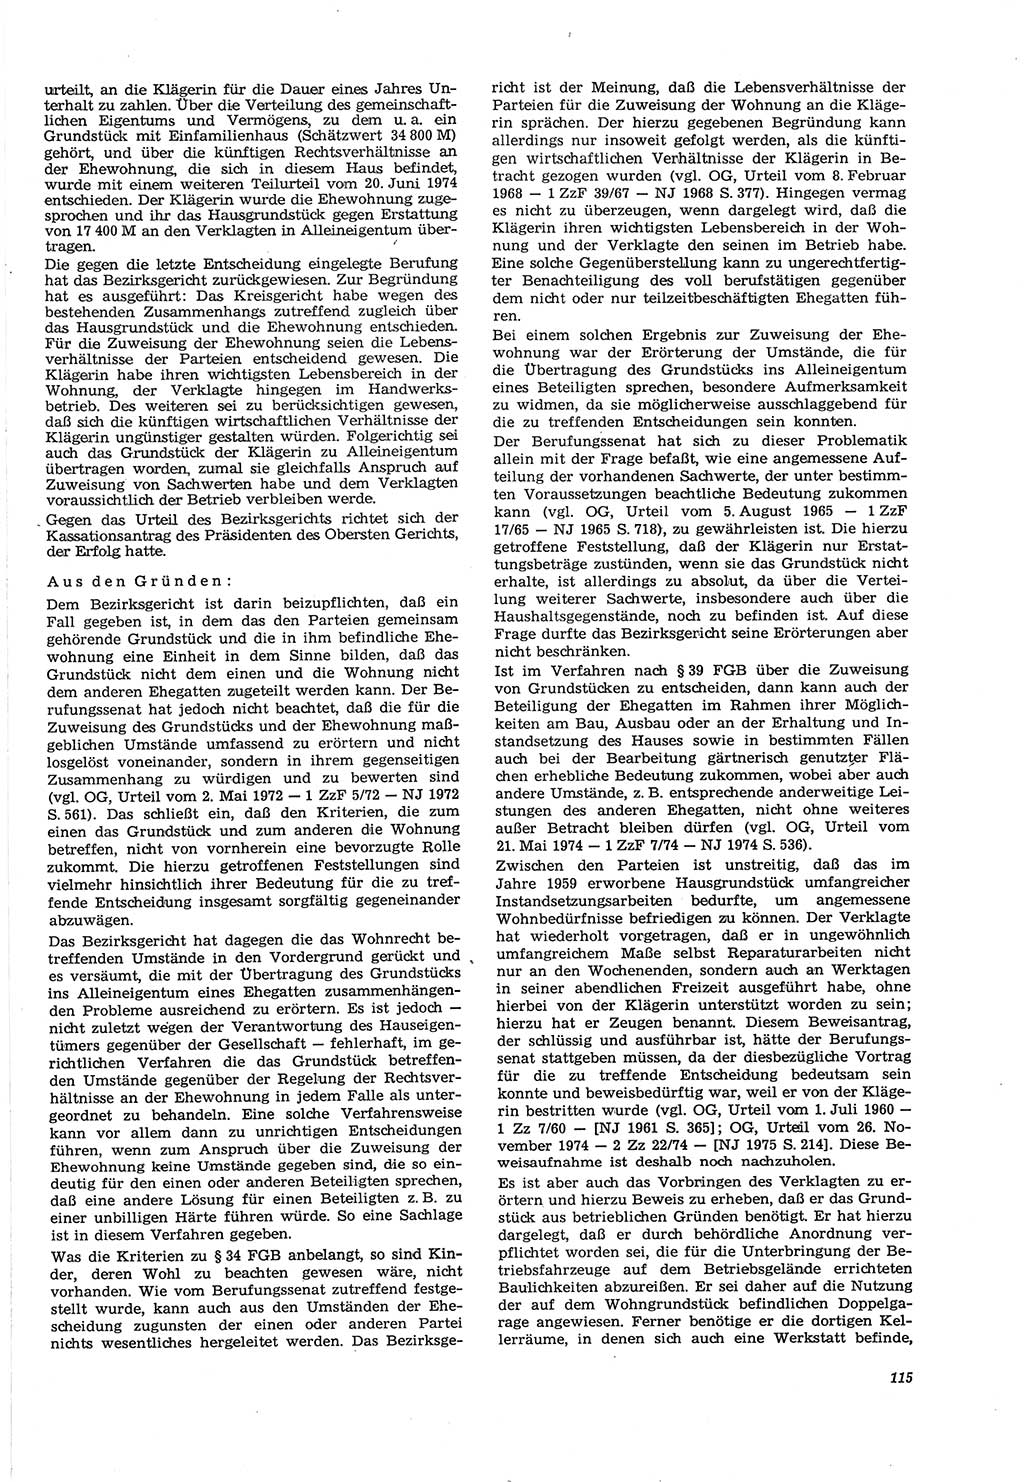 Neue Justiz (NJ), Zeitschrift für Recht und Rechtswissenschaft [Deutsche Demokratische Republik (DDR)], 30. Jahrgang 1976, Seite 115 (NJ DDR 1976, S. 115)